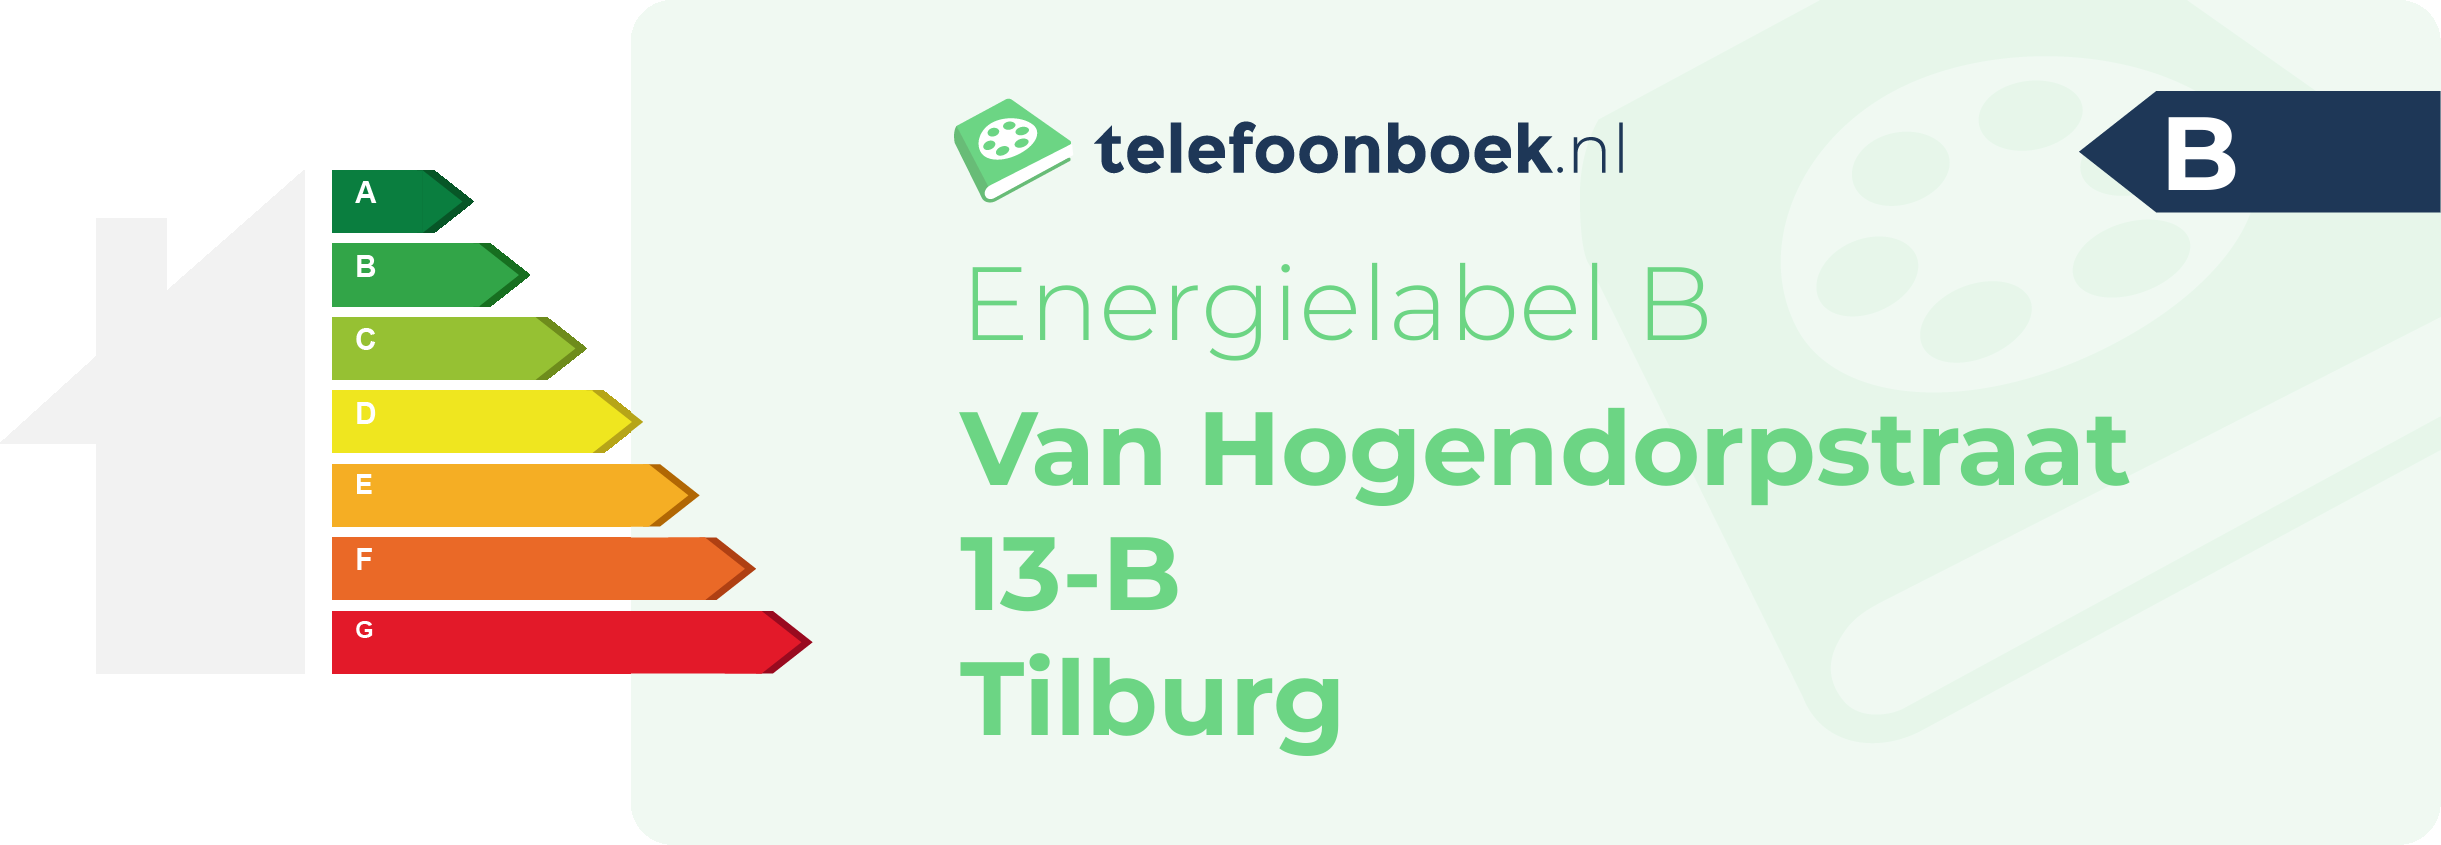 Energielabel Van Hogendorpstraat 13-B Tilburg